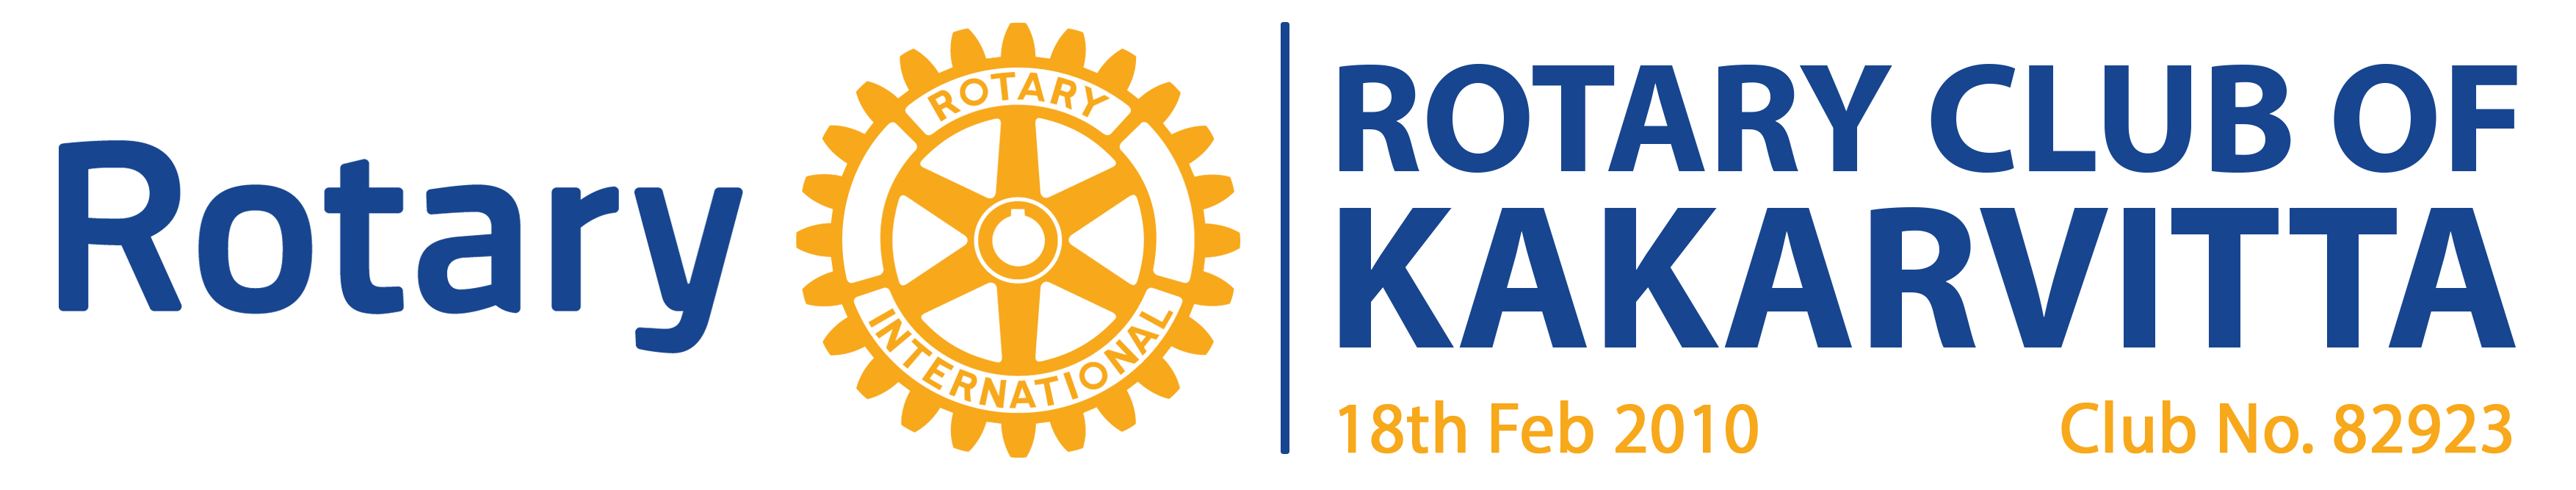 Rotary Club of Kakarvitta